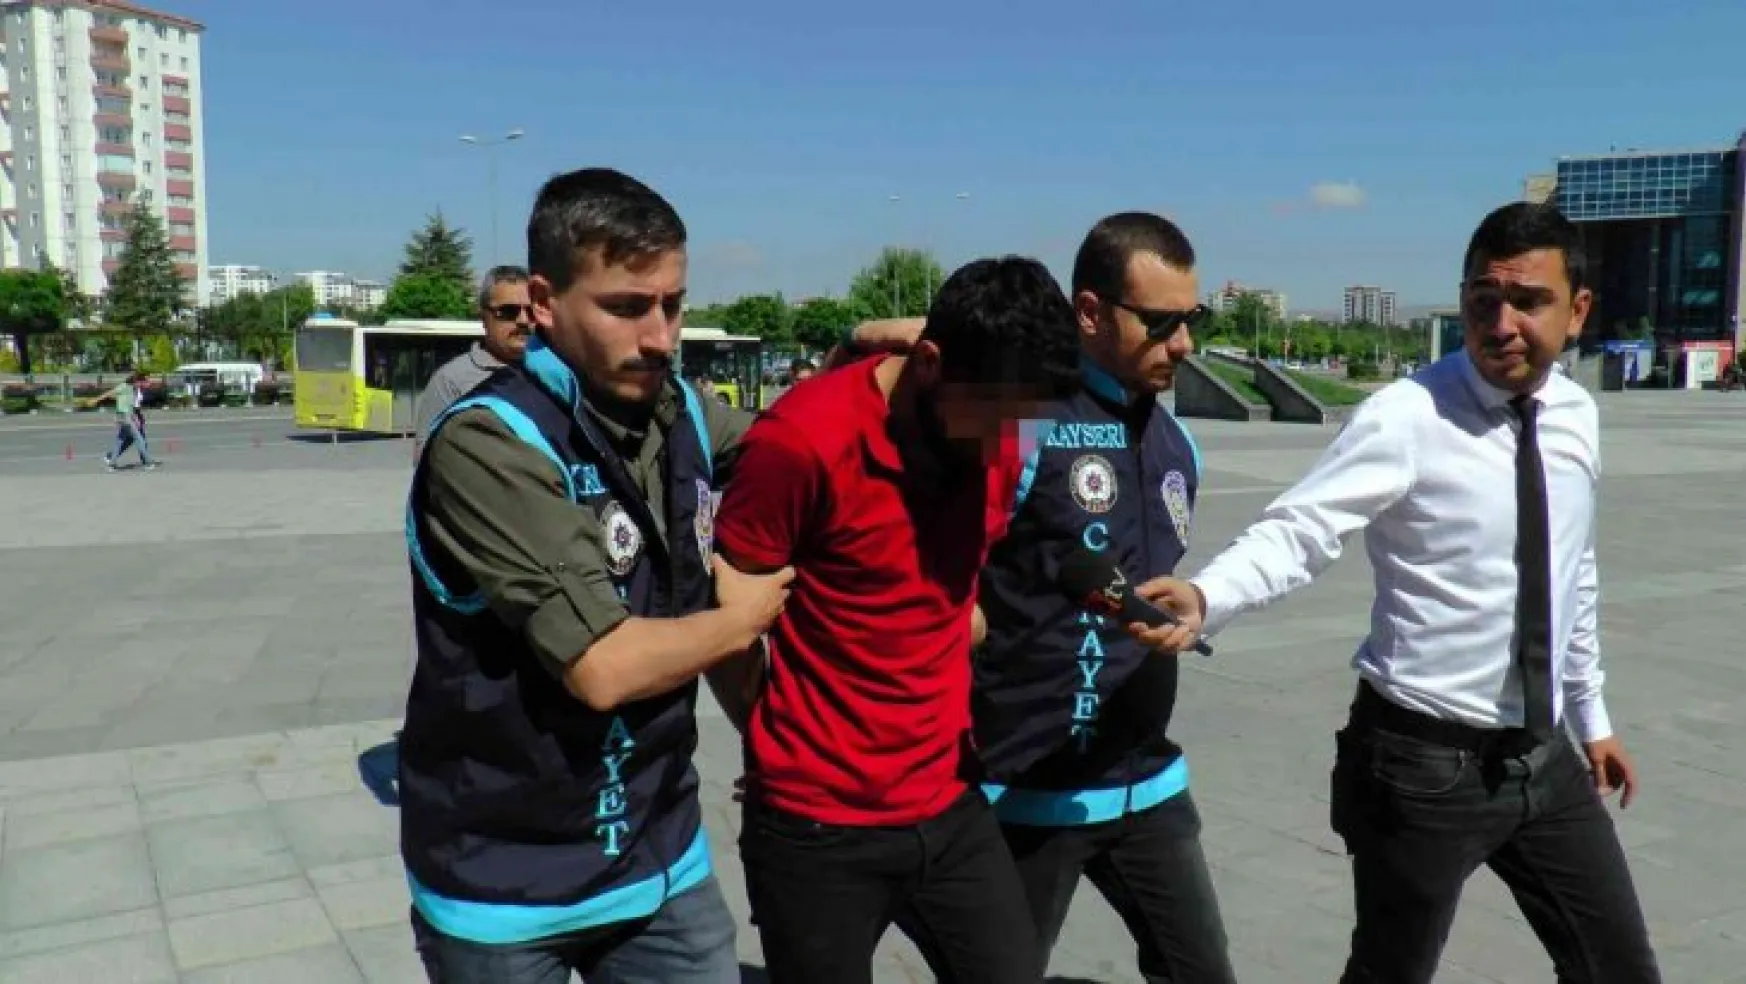 Kayseri'de dehşete düşüren cinayetle ilgili 3 kişi adliyeye sevk edildi